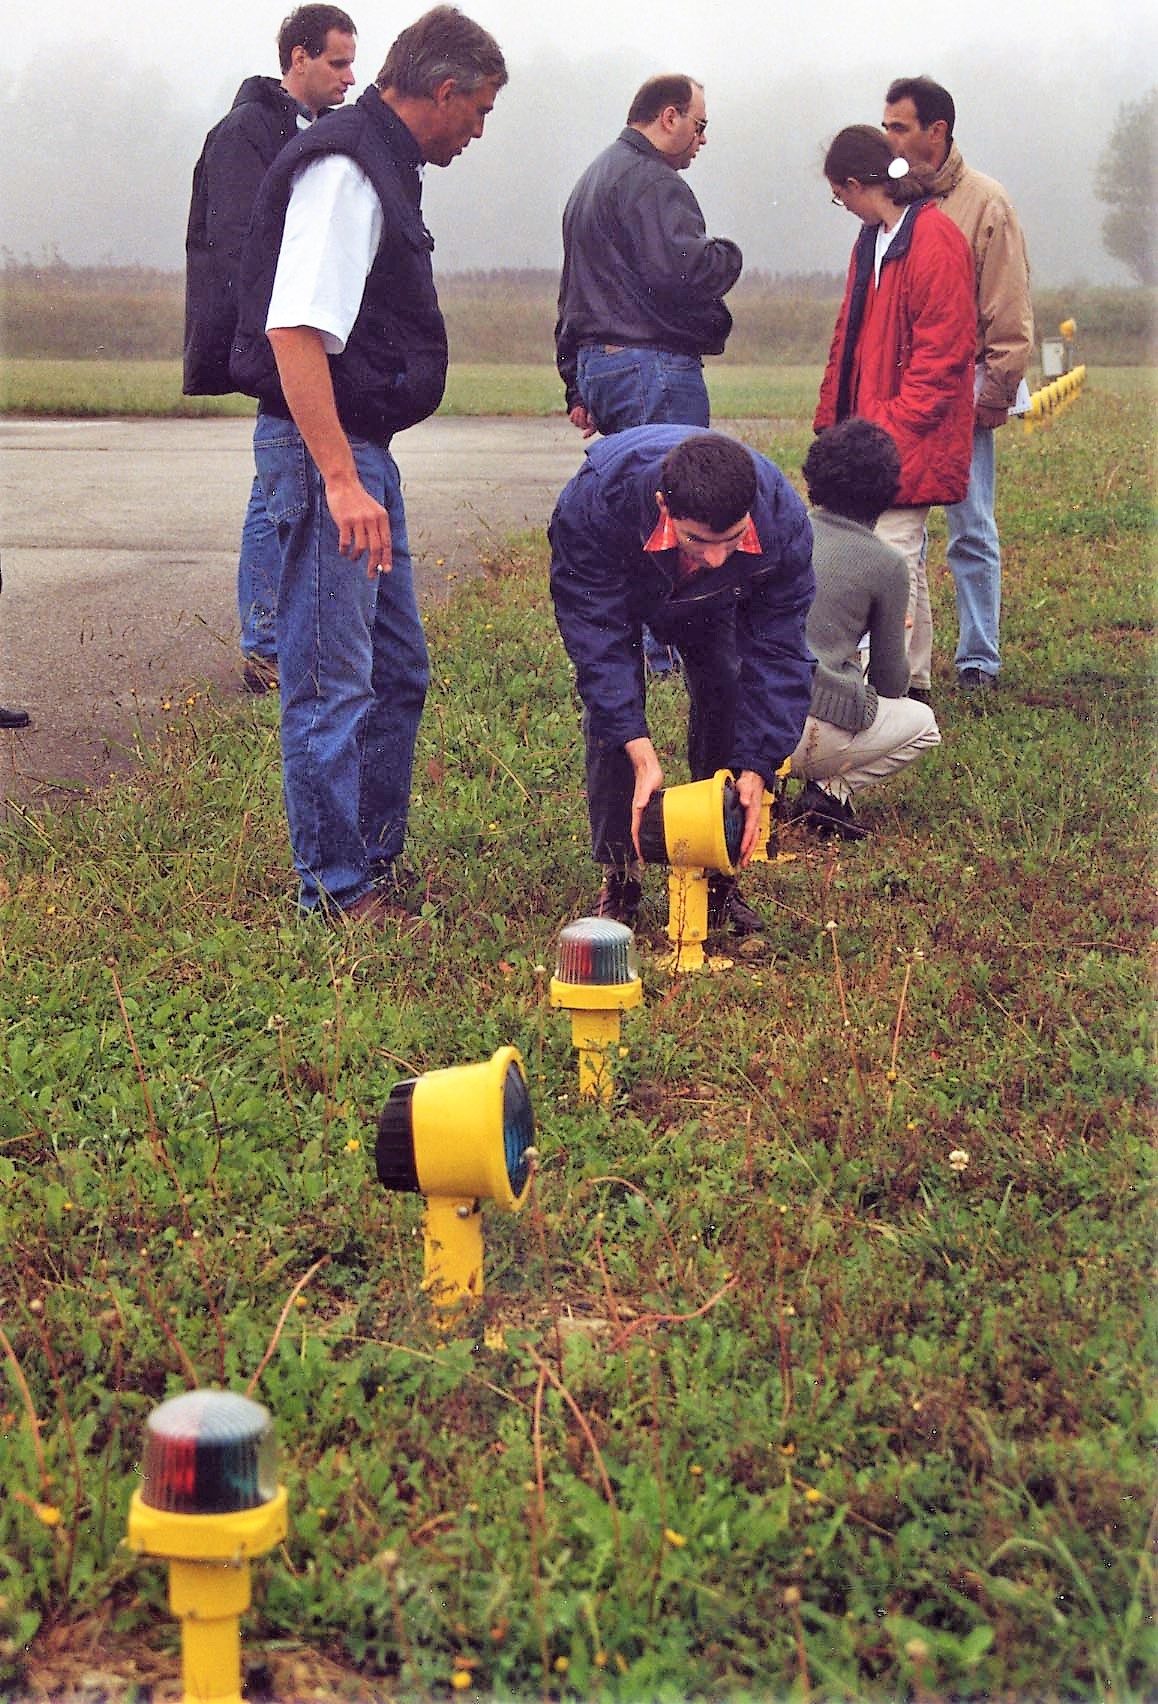 Éric fait le tour de la piste avec un groupe de stagiaires à la Toussaint en 2002. Un groupe de cinq stagiaires observent Eric donner des instructions à un sixième penché sur les différentes lampes de repérage de piste au sol